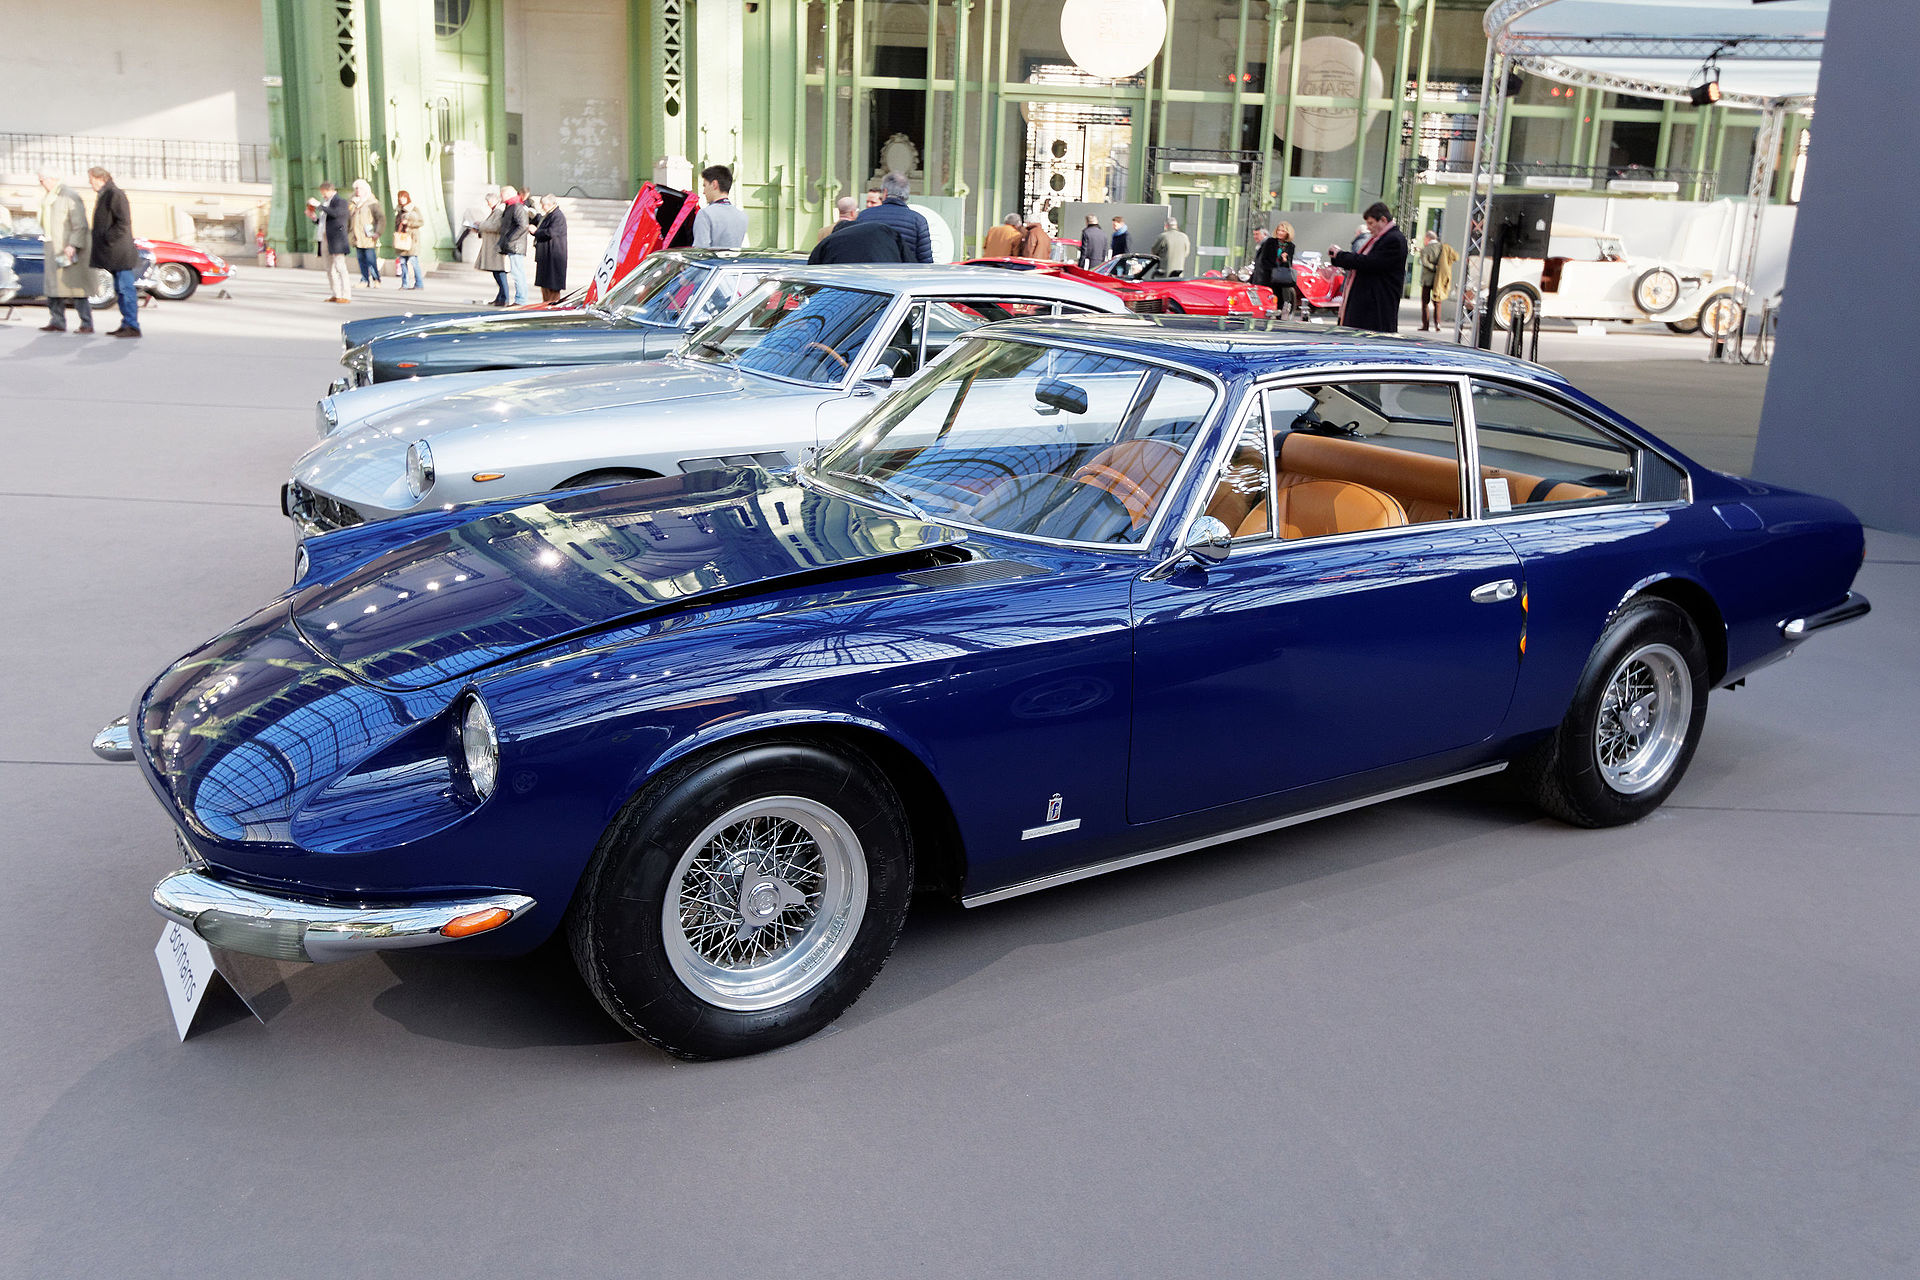 Paris_-_Bonhams_2015_-_Ferrari_365_GT_2+2_Coupé_-_1968_-_002